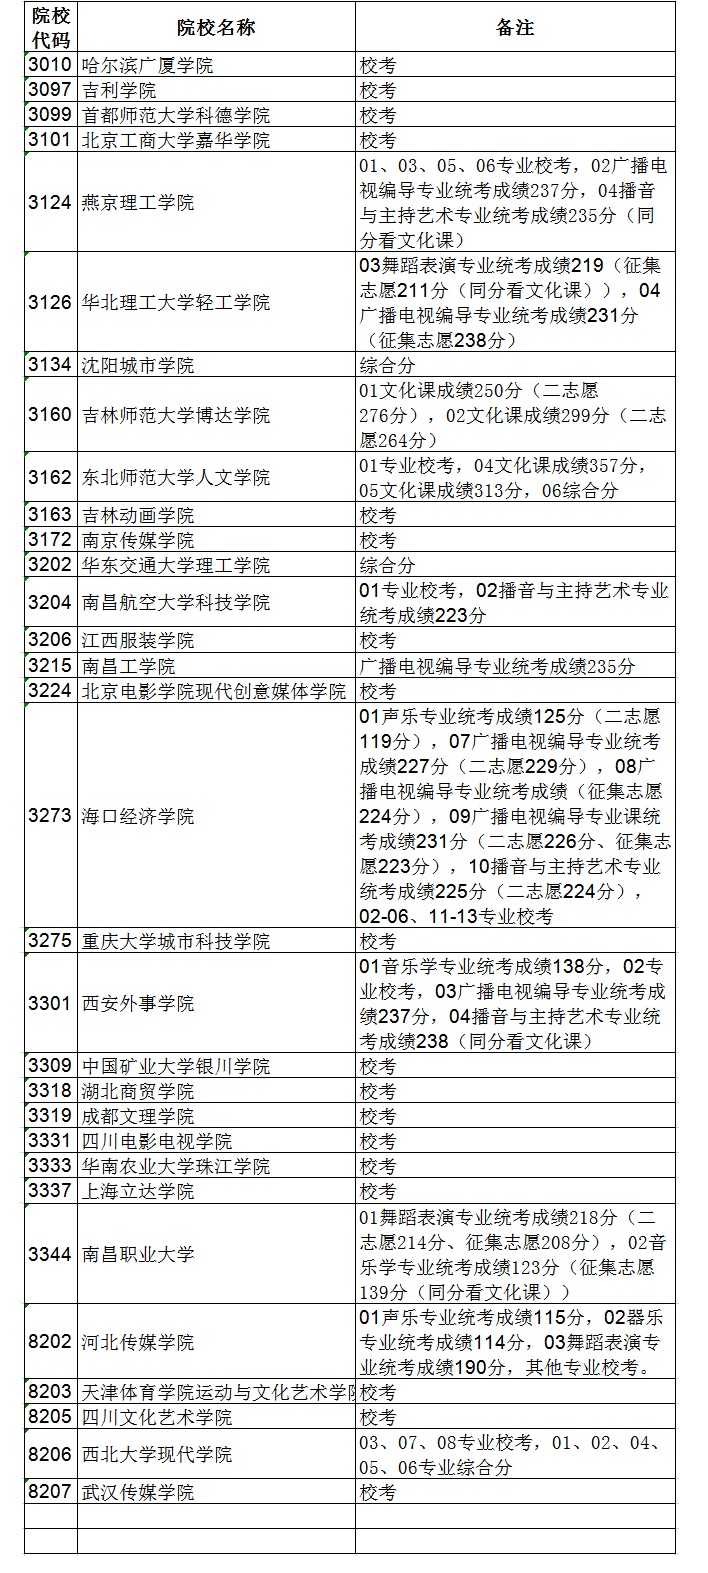 2020黑龙江高考艺术类本科二批B段录取结束院校名单及查询方式